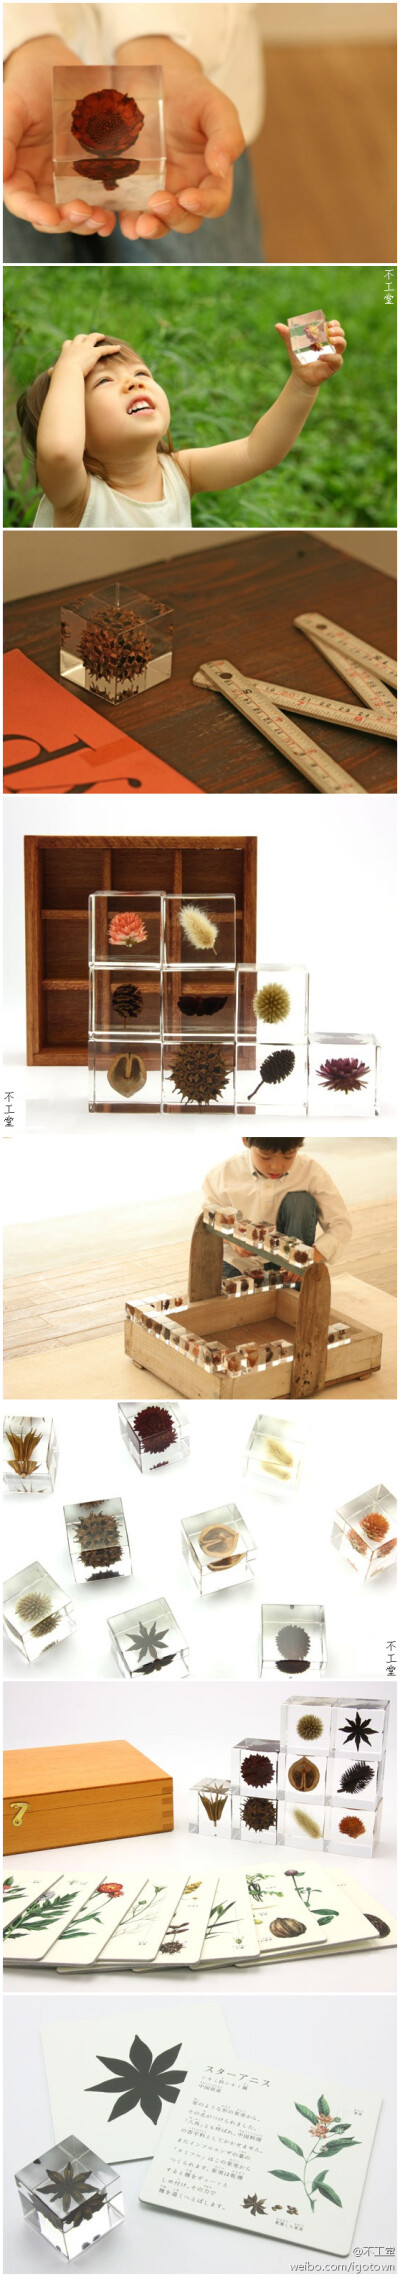 日本设计师吉村紘一的创意品牌Sola出品的这些亚克力立方体将各种各样的种子凝结其中。